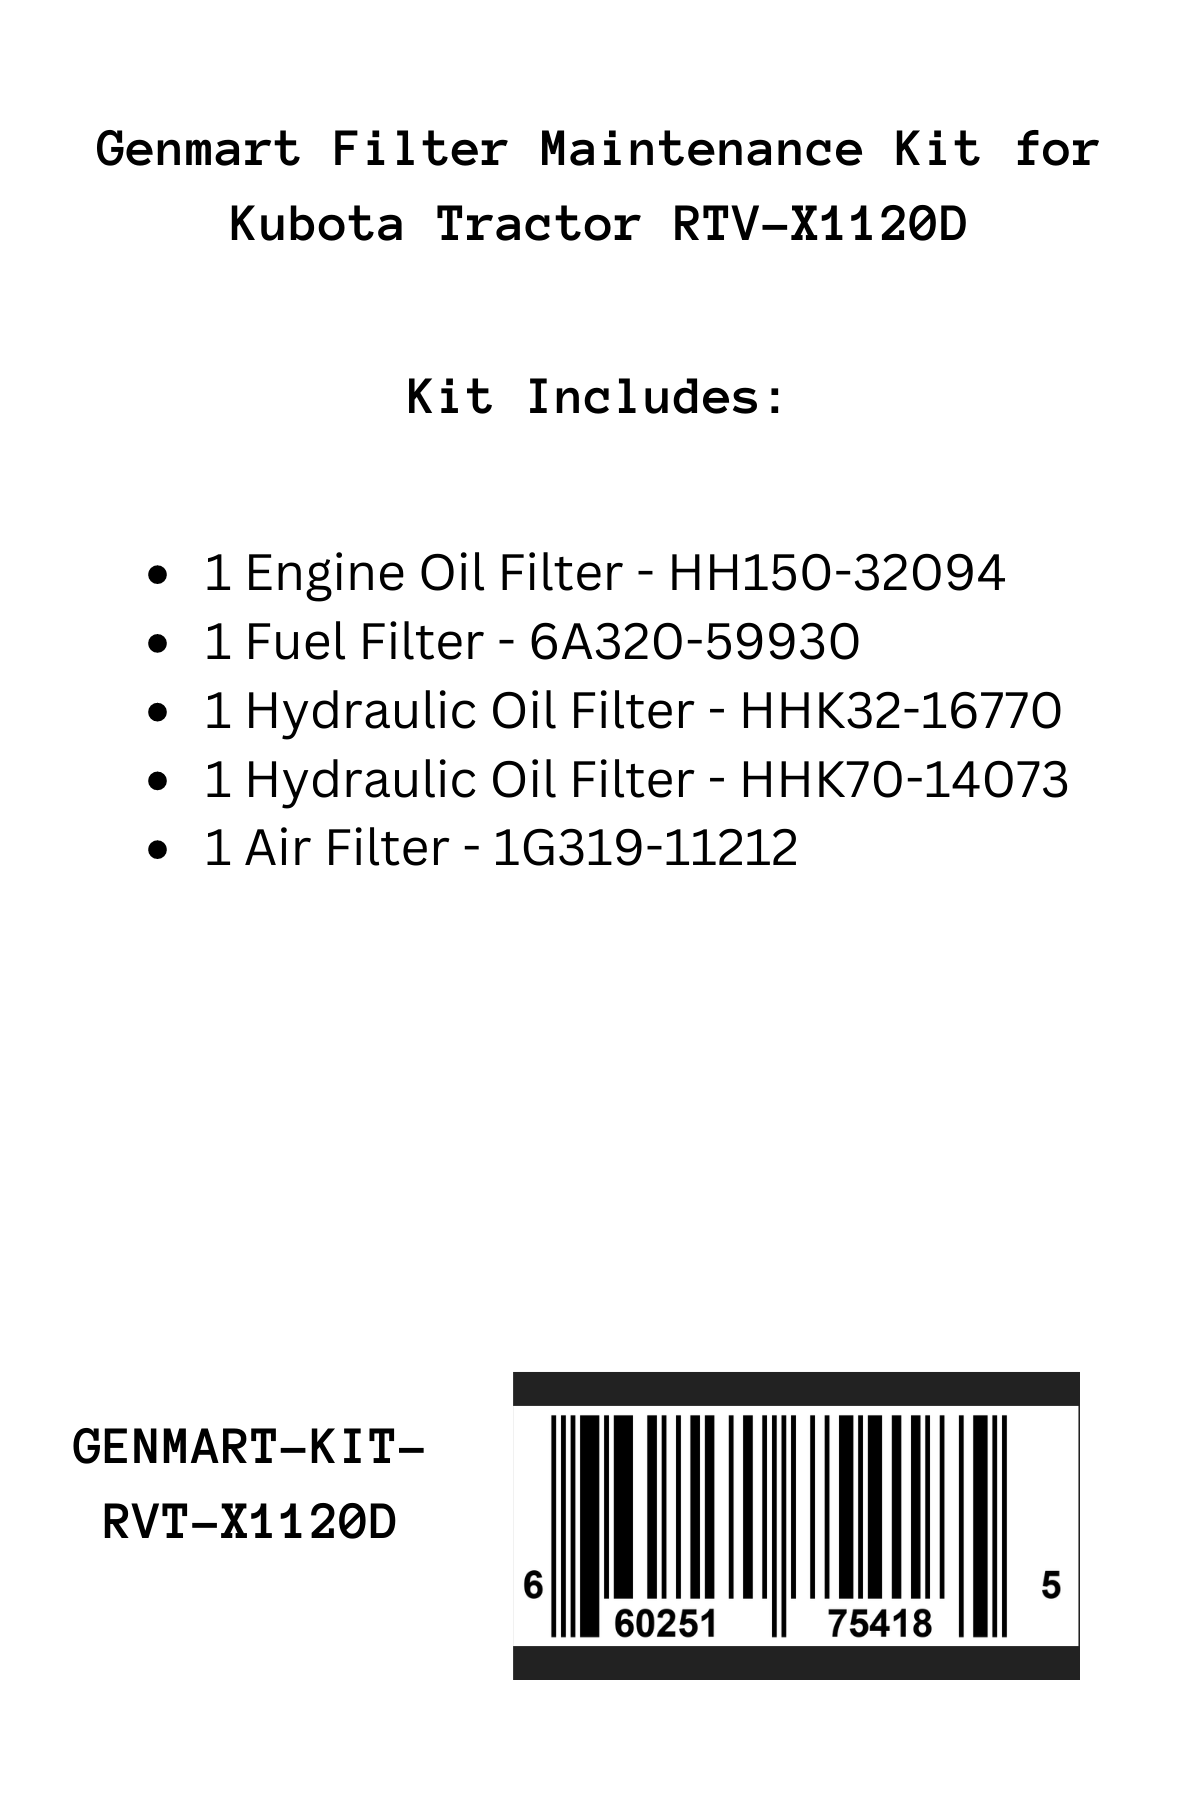 Genmart Maintenance Kit for Kubota Tractor RTV-X1120D